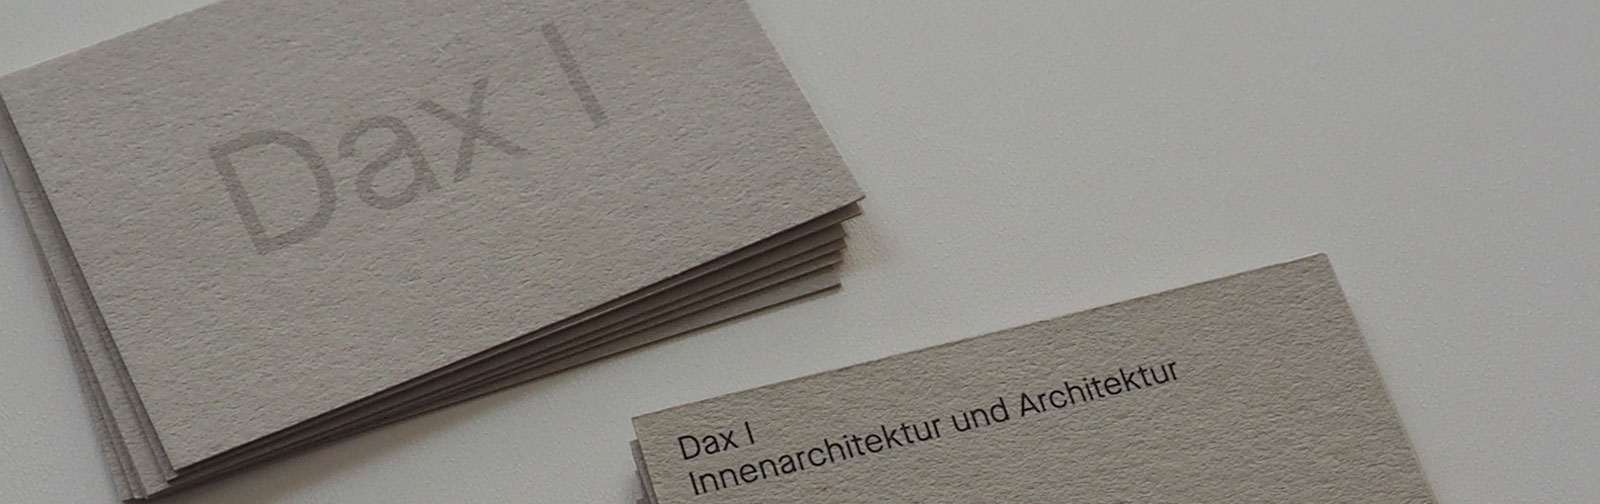 Dax I – Innenarchitektur und Architektur